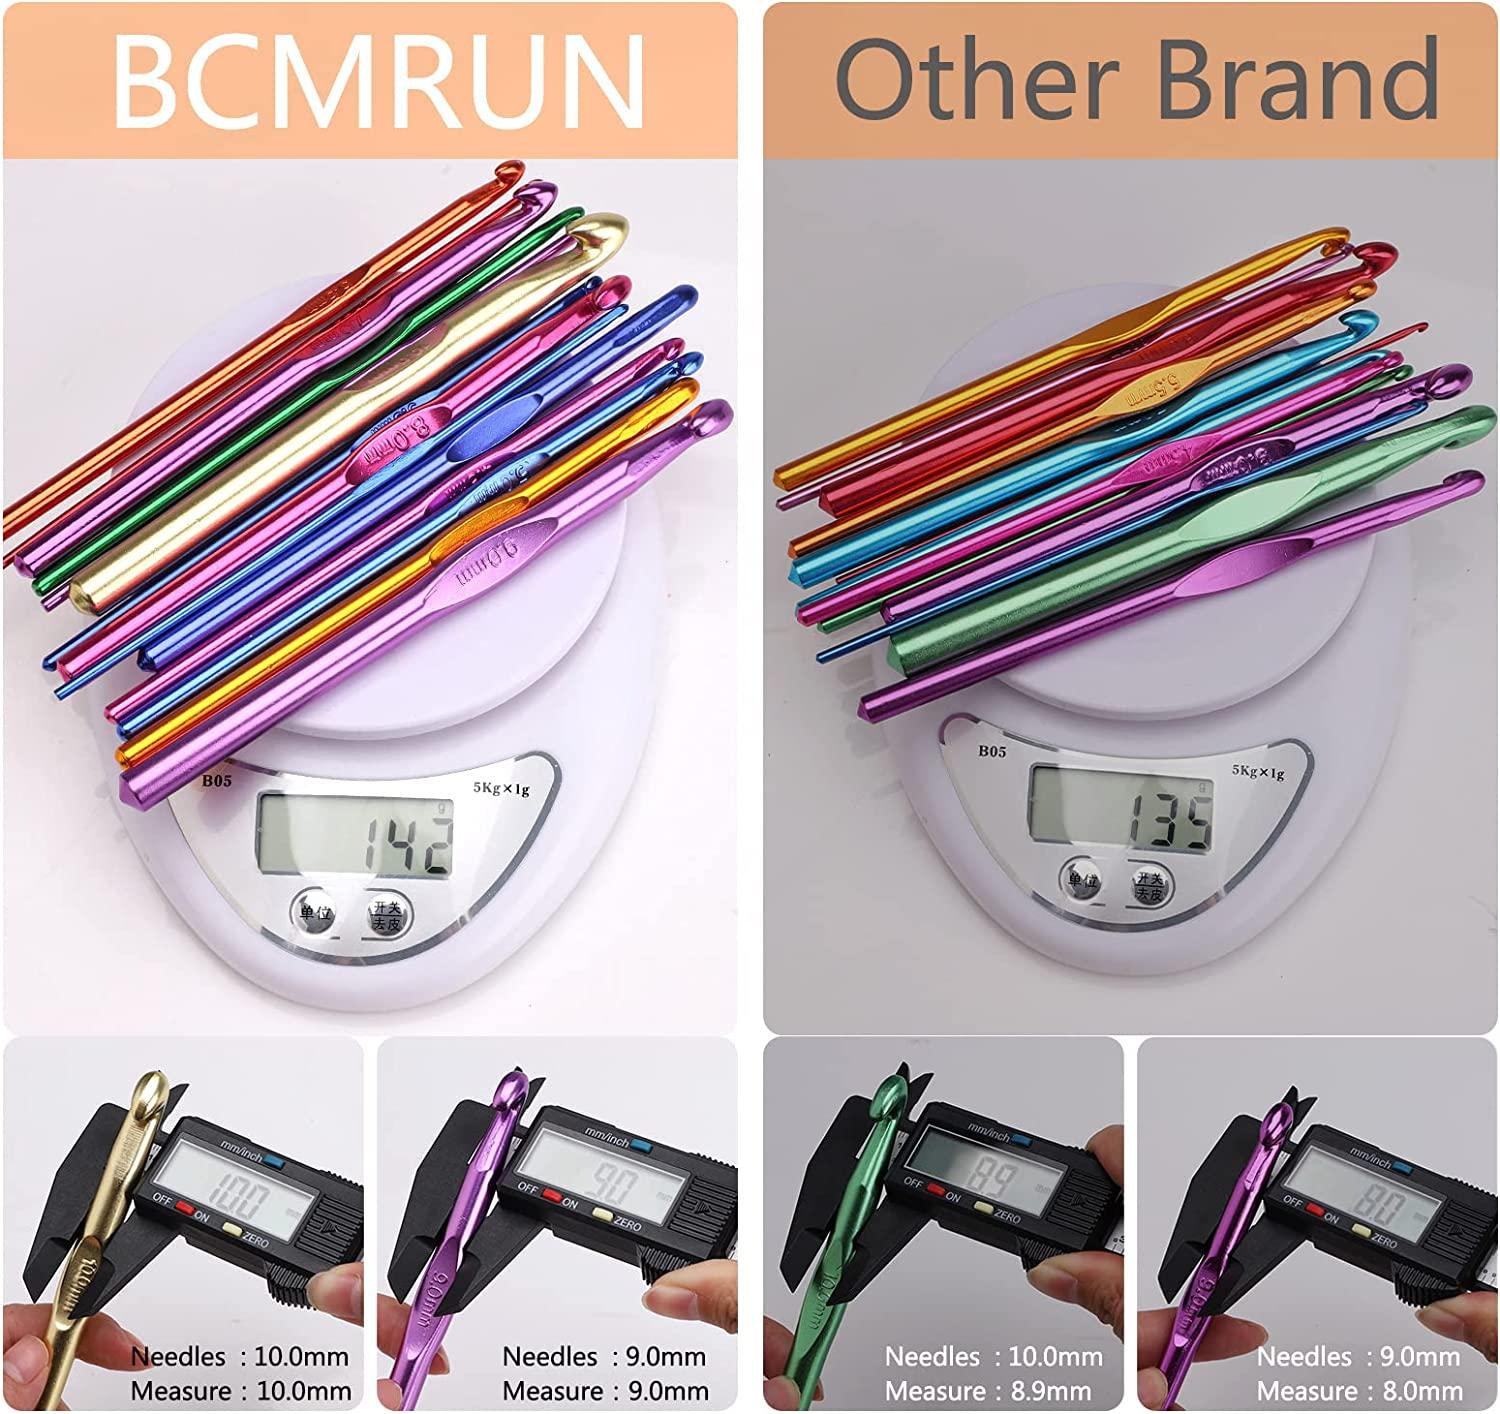  BCMRUN 14 pcs Multicolor Aluminum Crochet Hooks Knitting  Needles Craft Yarn 2-10mm